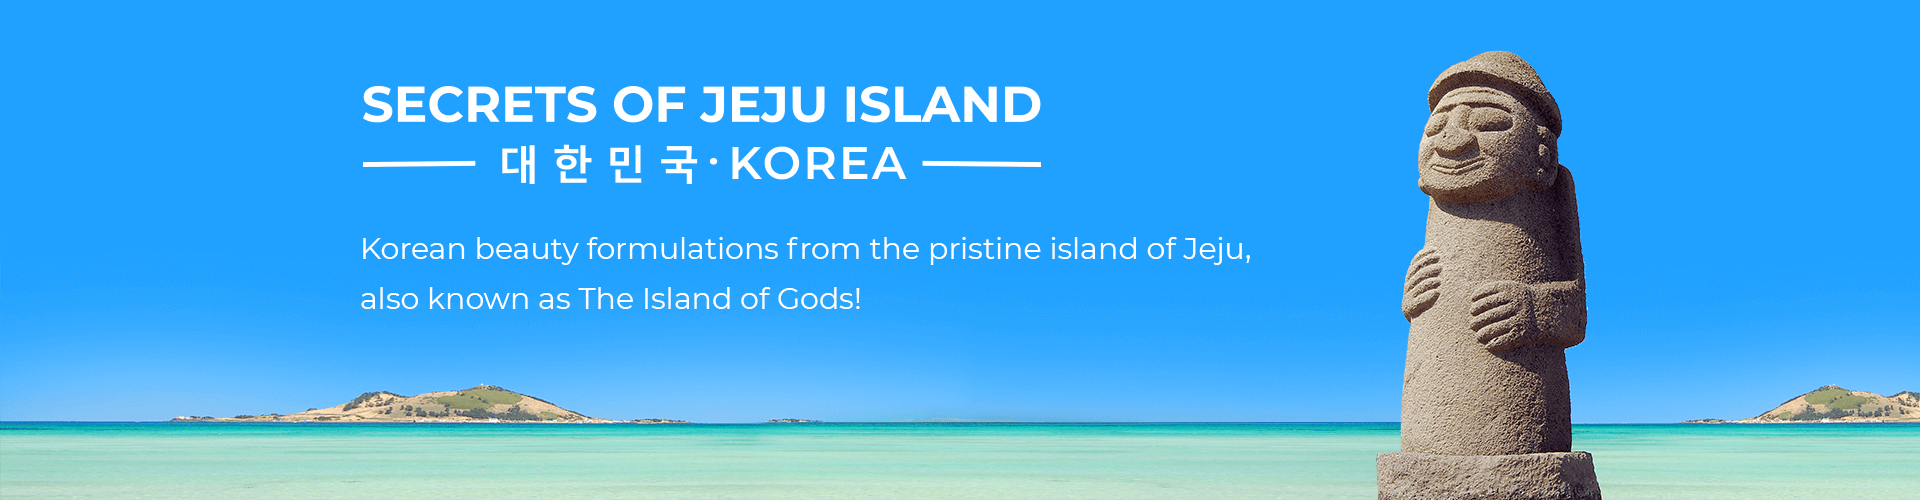 Secrets of Jeju Island